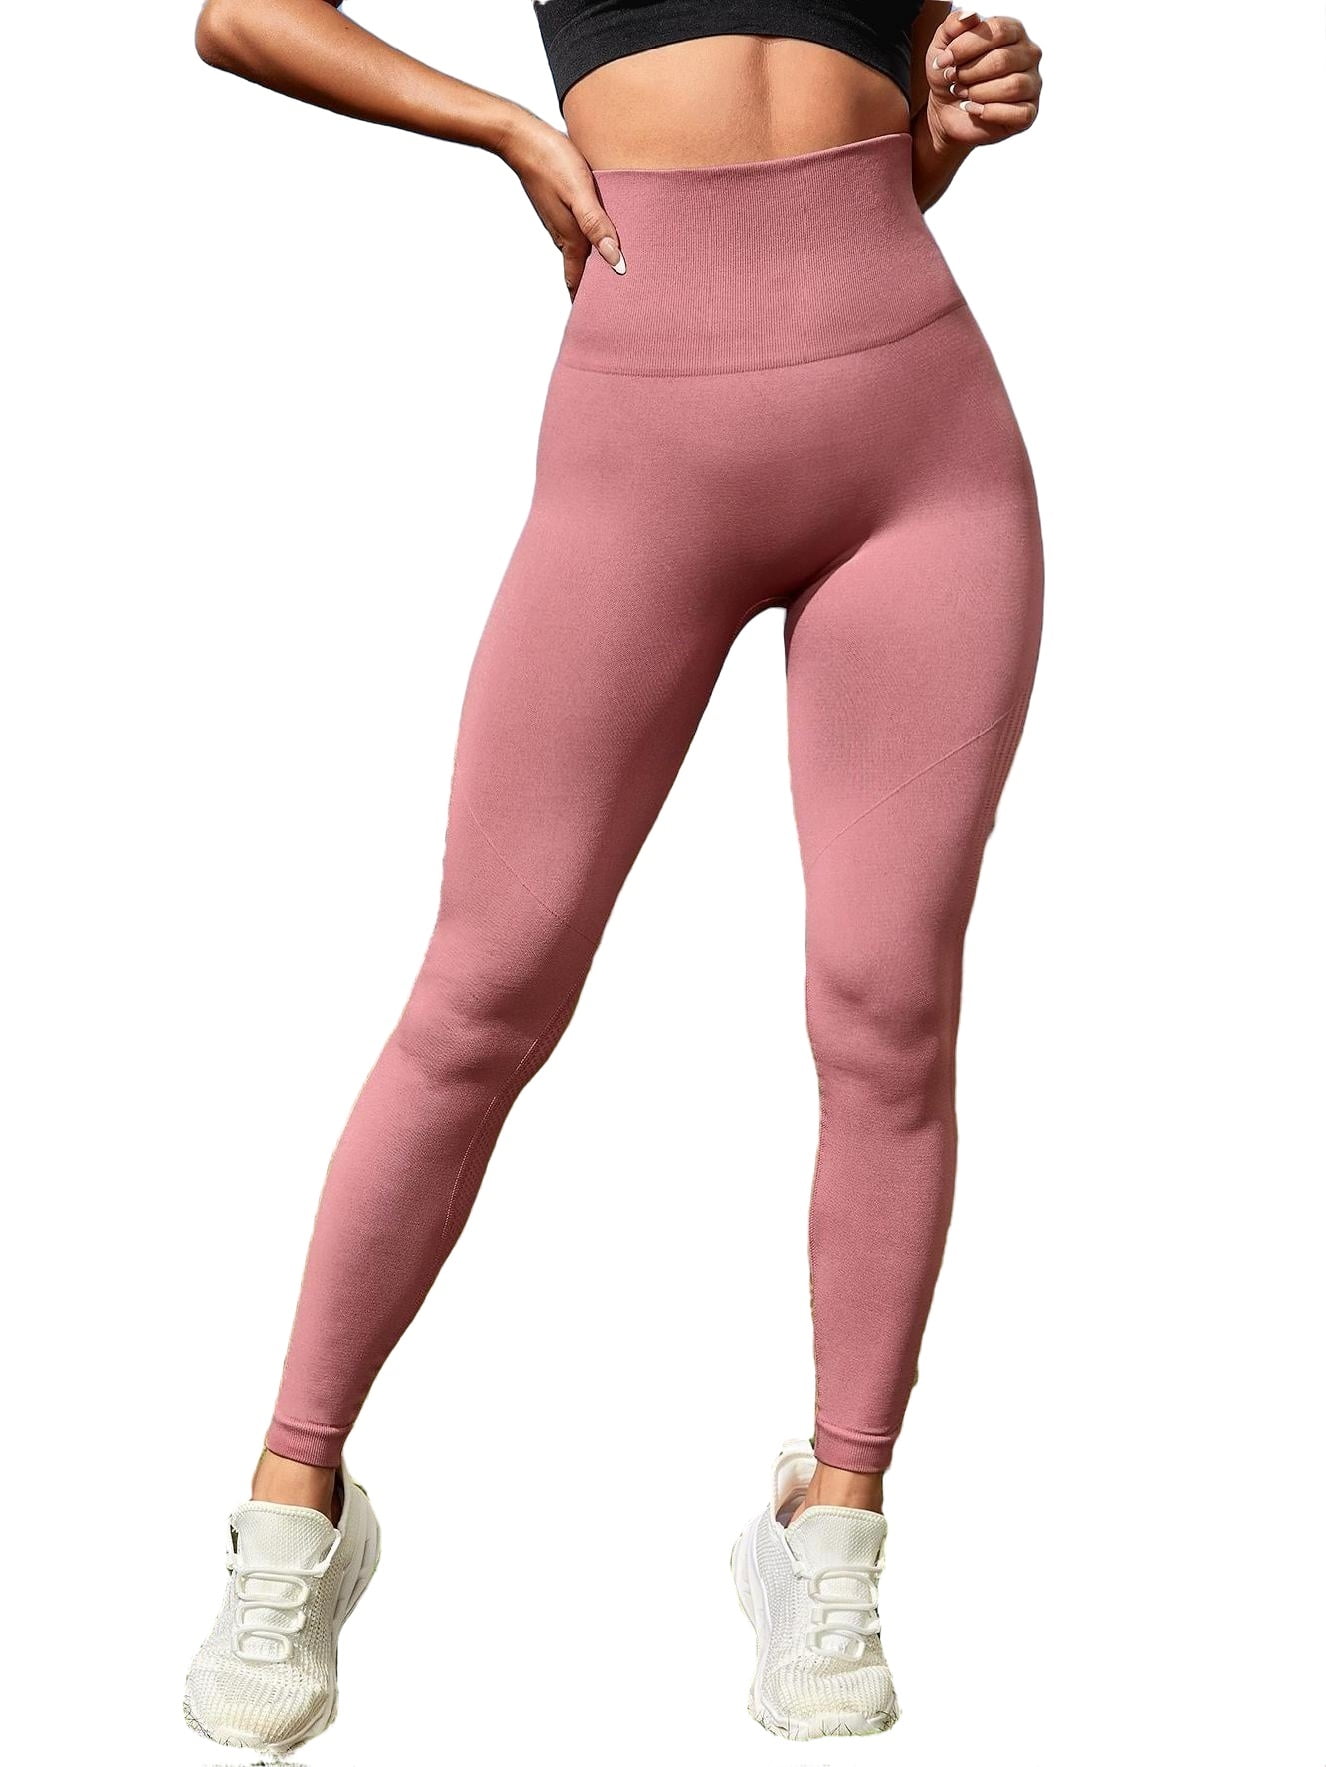 Dusty Pink Active Bottoms Women's Sports Leggings (Women's)